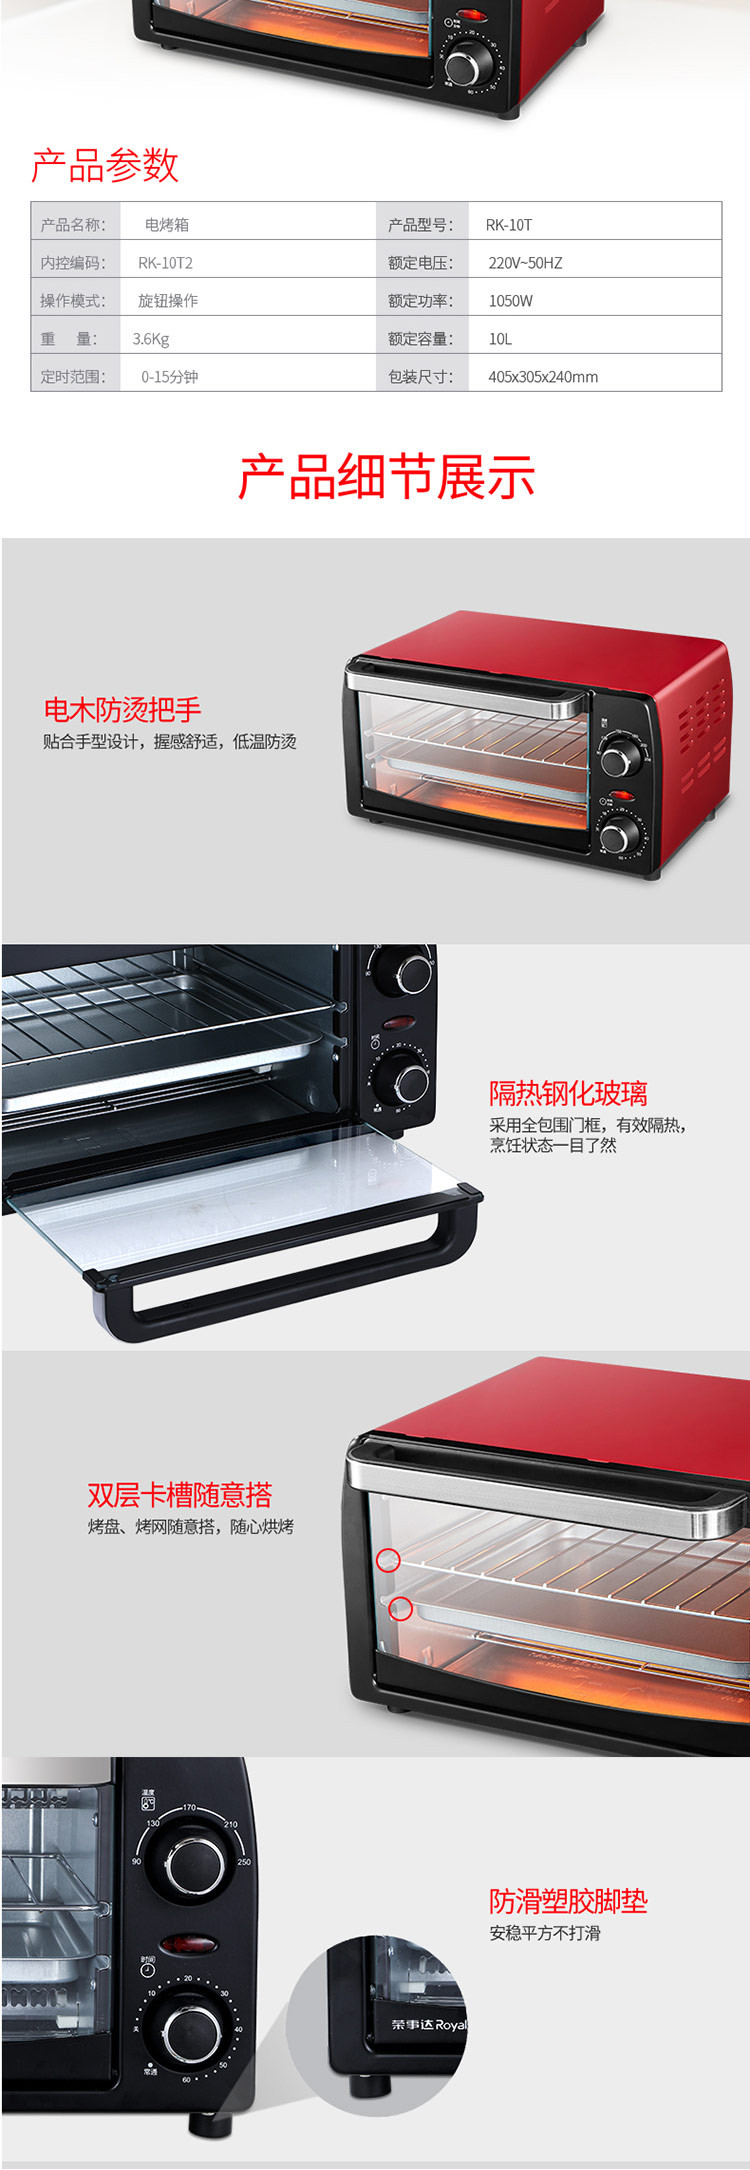 荣事达开门红系列 10.0L电烤箱 RK-10T2